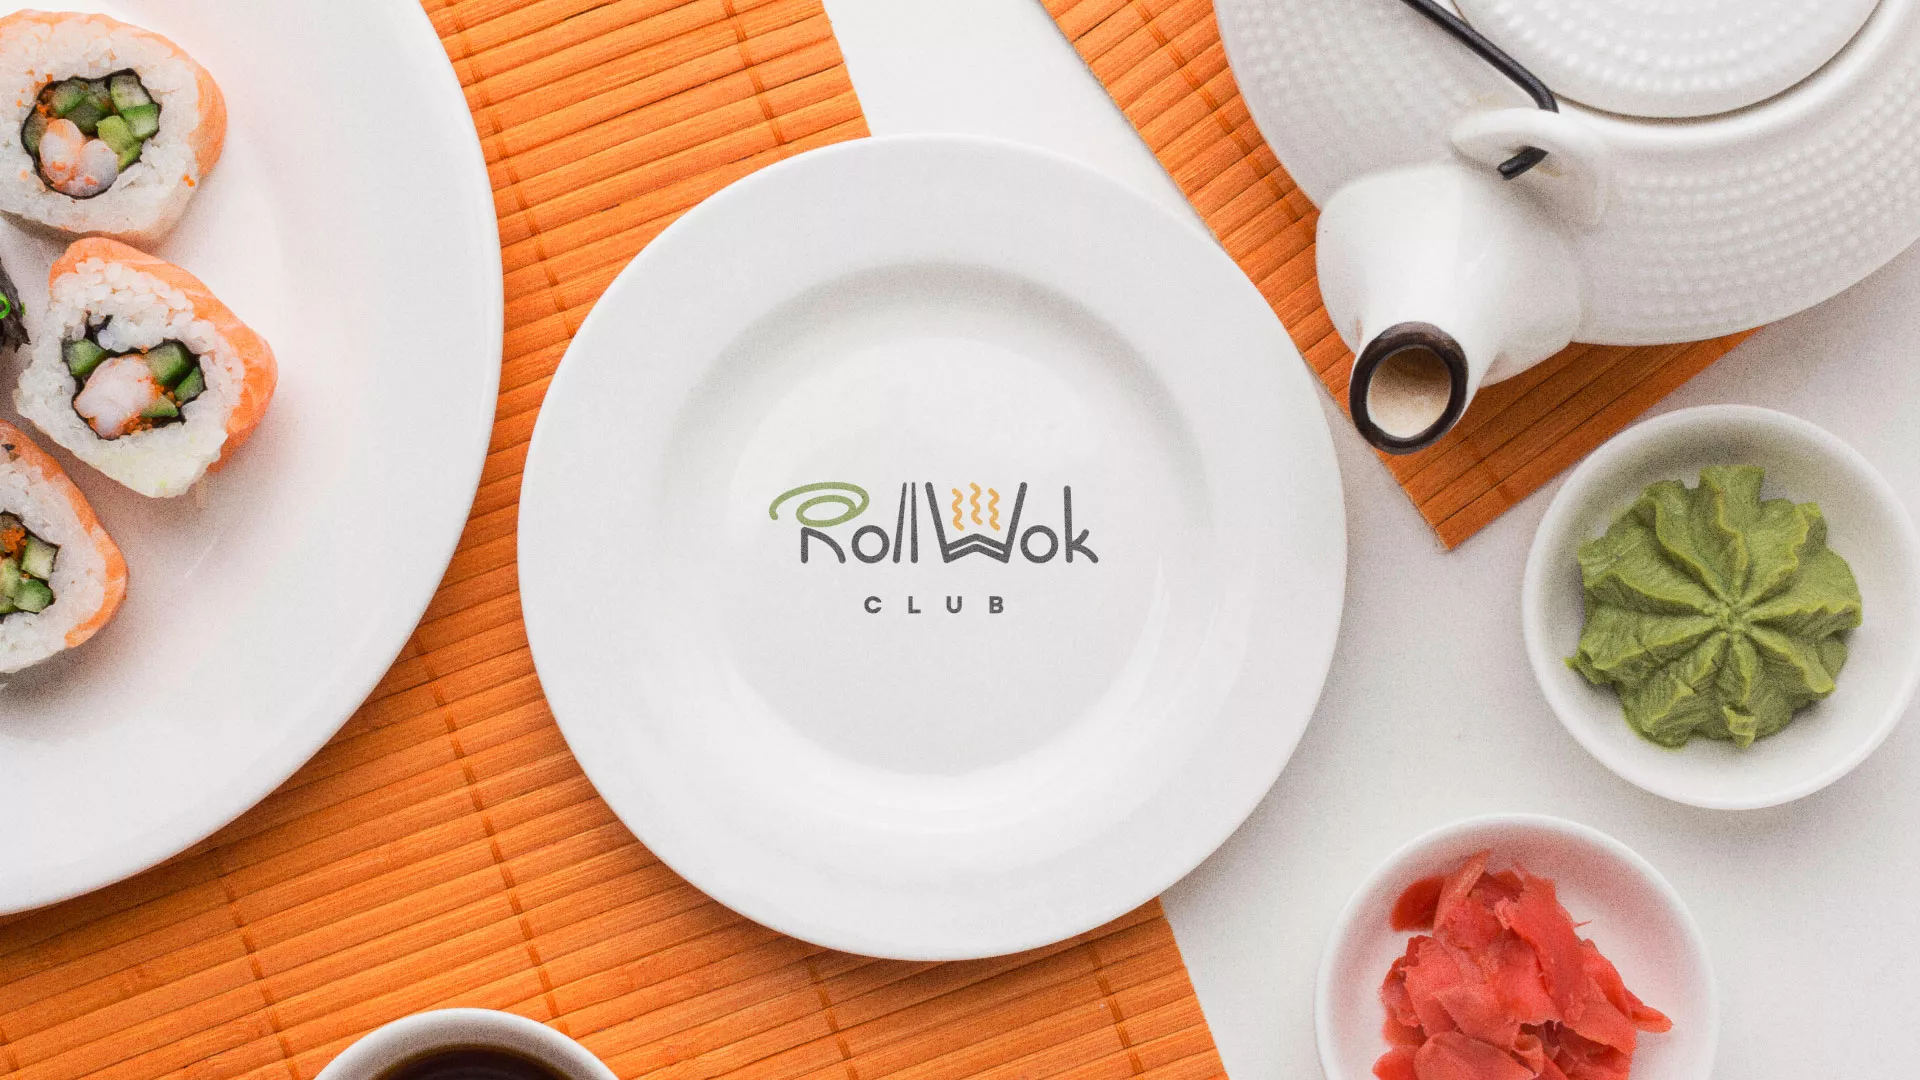 Разработка логотипа и фирменного стиля суши-бара «Roll Wok Club» в Петрове Вале